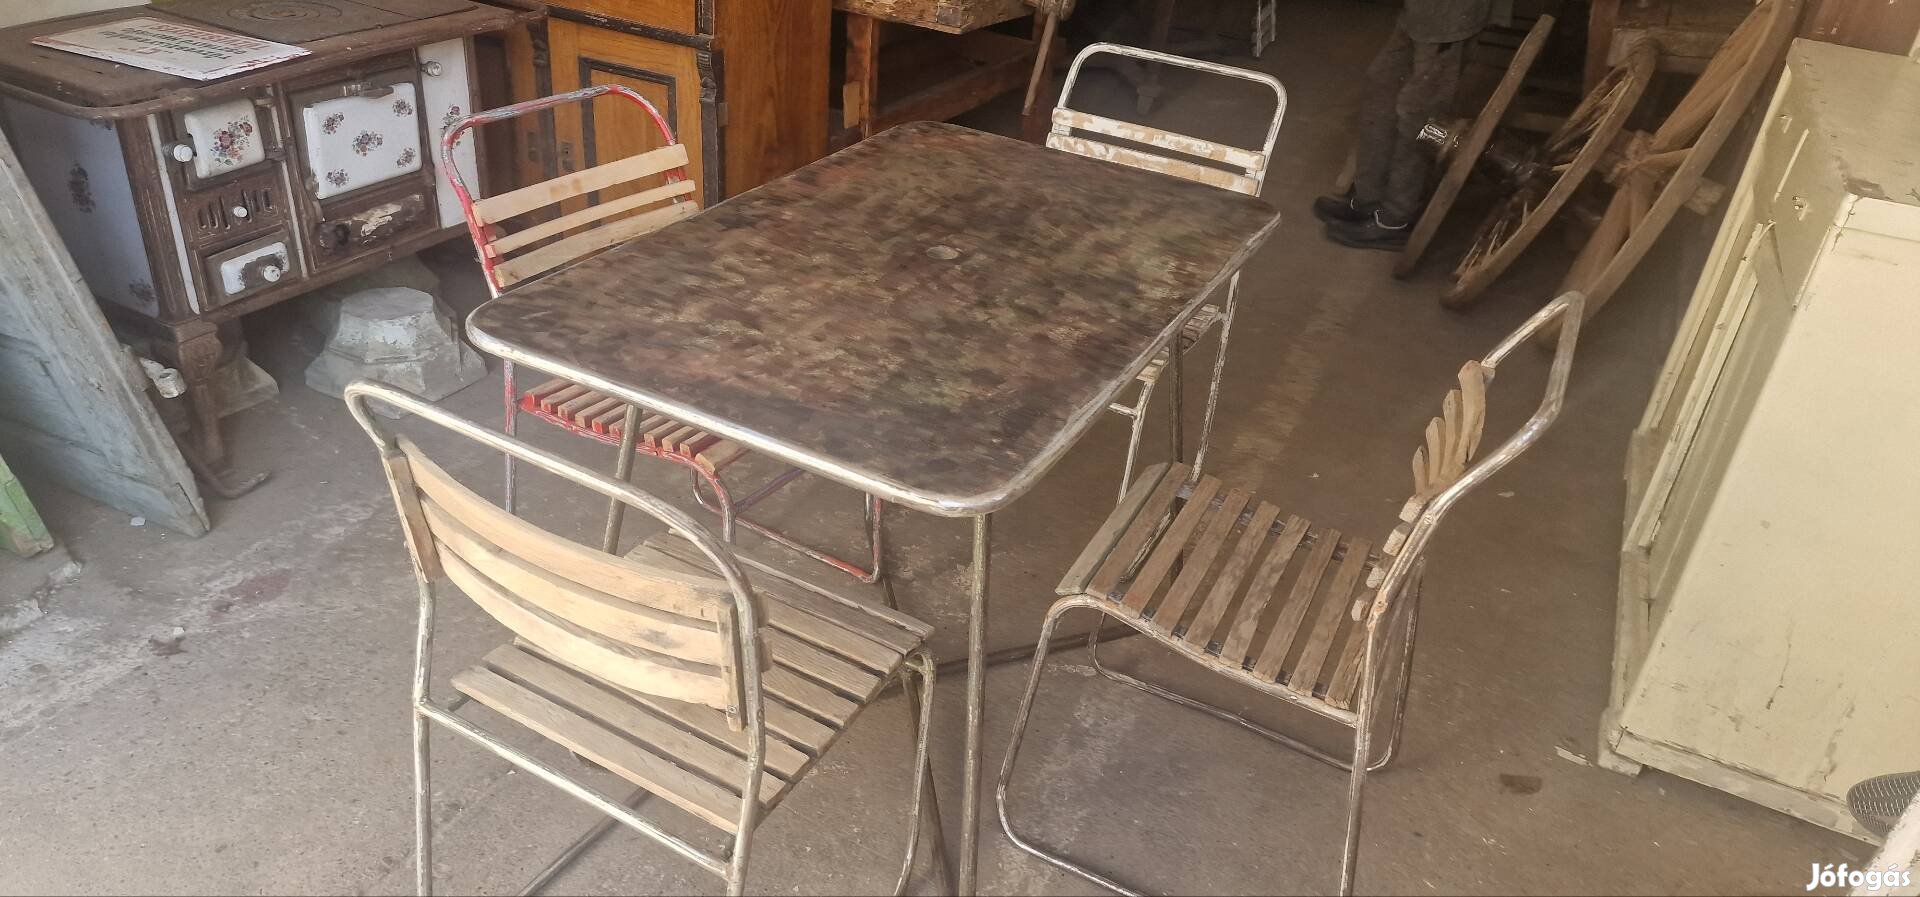 Retro kerti garnitúra régi kocsma éttermi asztalok csővázas  szett